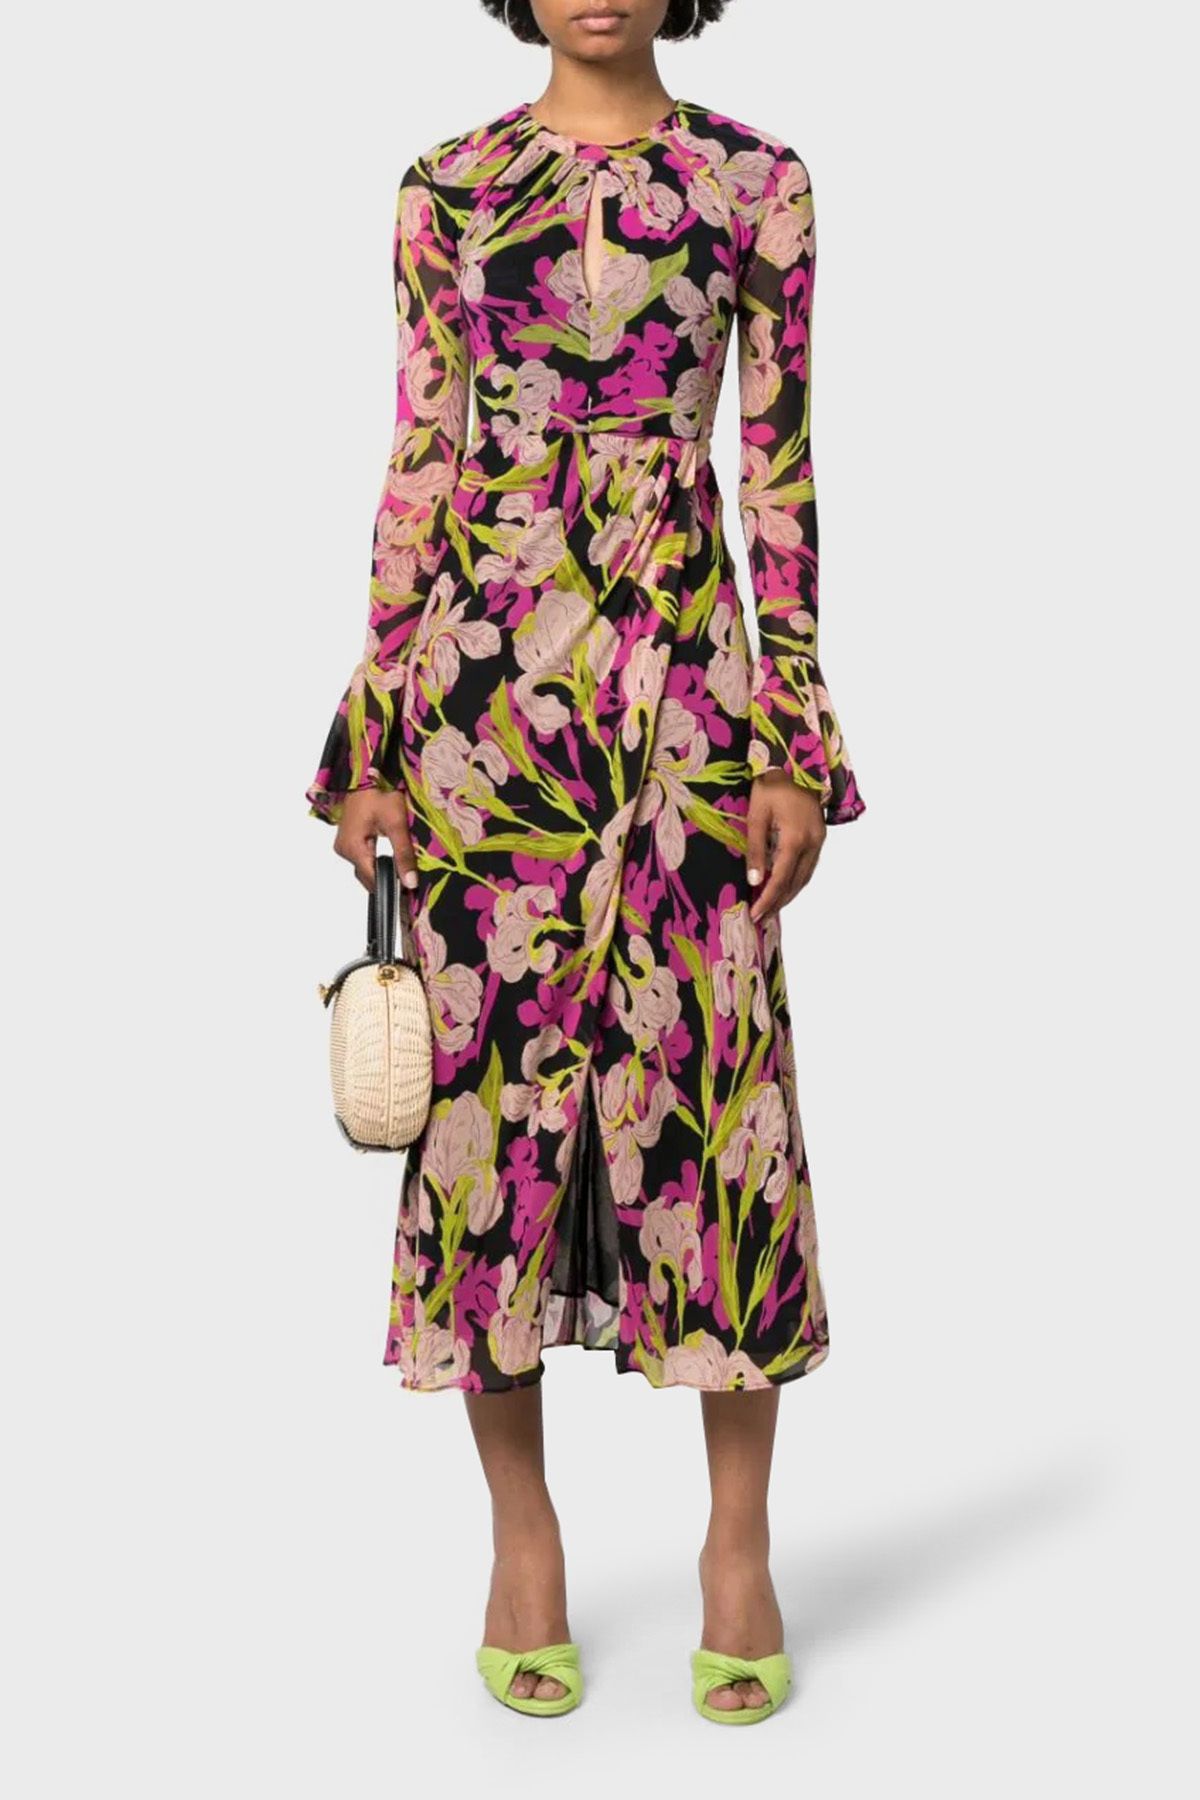 PİNKO Pinko Çiçek Desenli Fırfırlı Yırtmaçlı Dekolteli Regular Fit Elbise  ELBİSE 101834 A154 ZY5